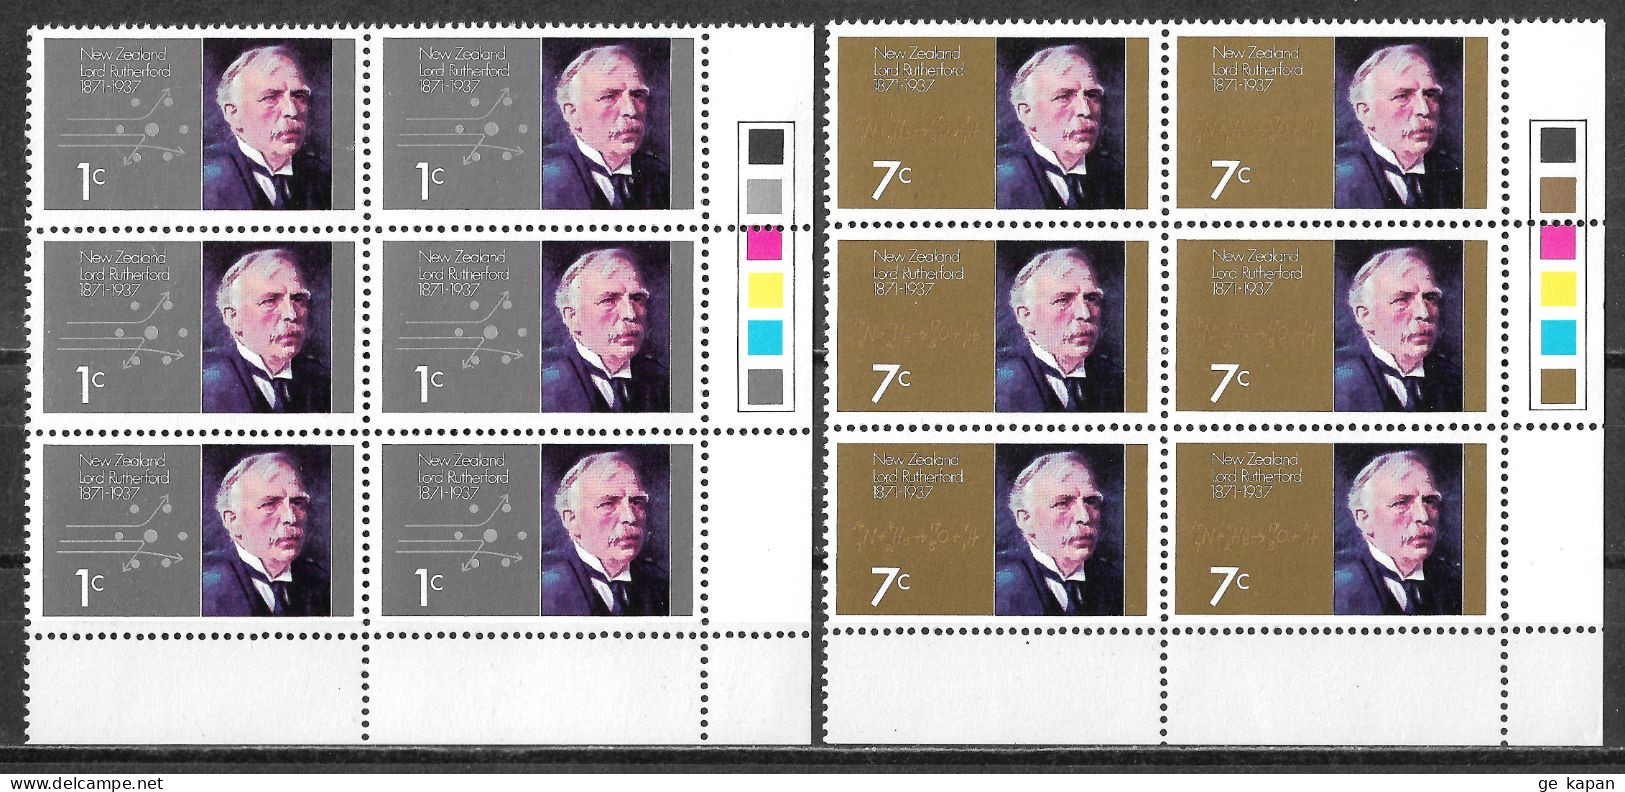 1971 NEW ZEALAND Complete Set Of 2 Blocks Of 6 MNH OG Stamps (Scott # 487,488) CV $5.40 - Nuovi